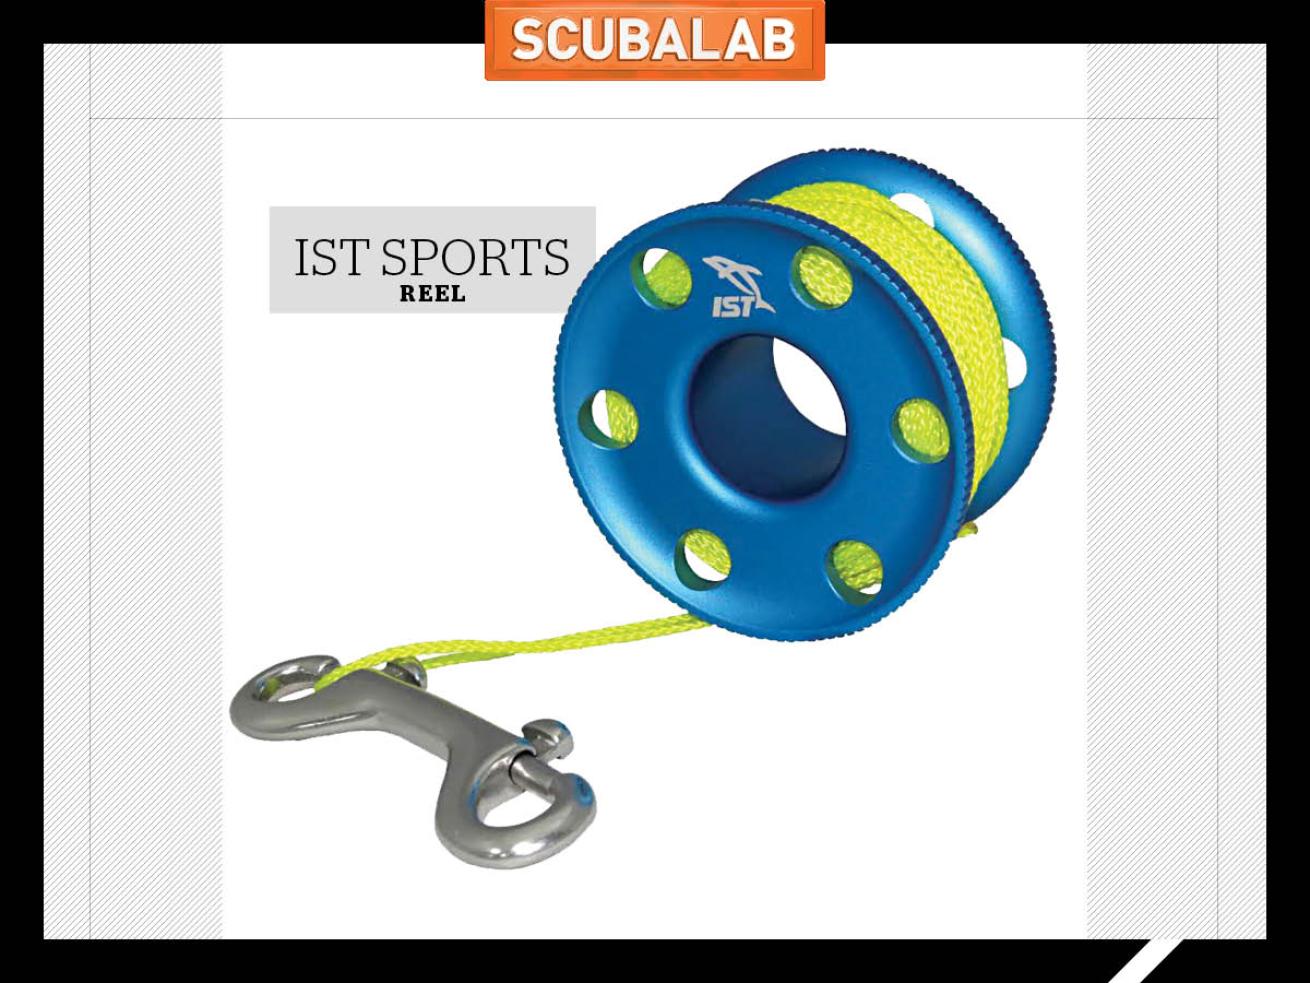 IST Sports scuba diving reel solo gear